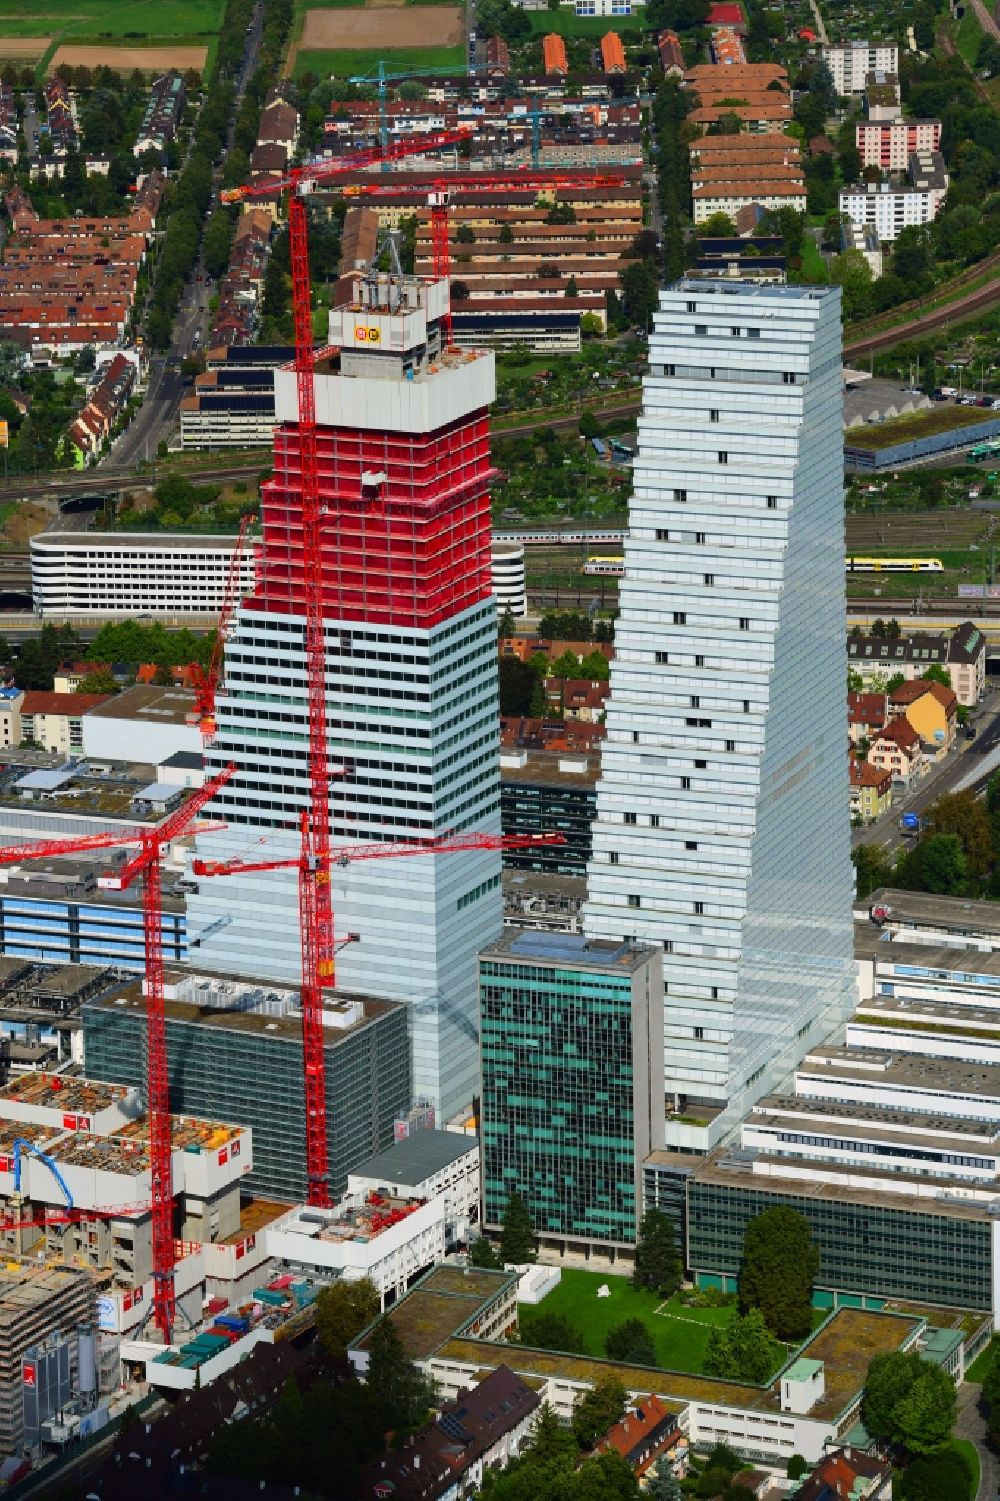 Luftaufnahme Basel - Erweiterungs- Baustellen und Baukräne am Areal und Betriebsgelände der Pharmafirma Roche mit dem Roche- Turm - Hochhaus in Basel in der Schweiz